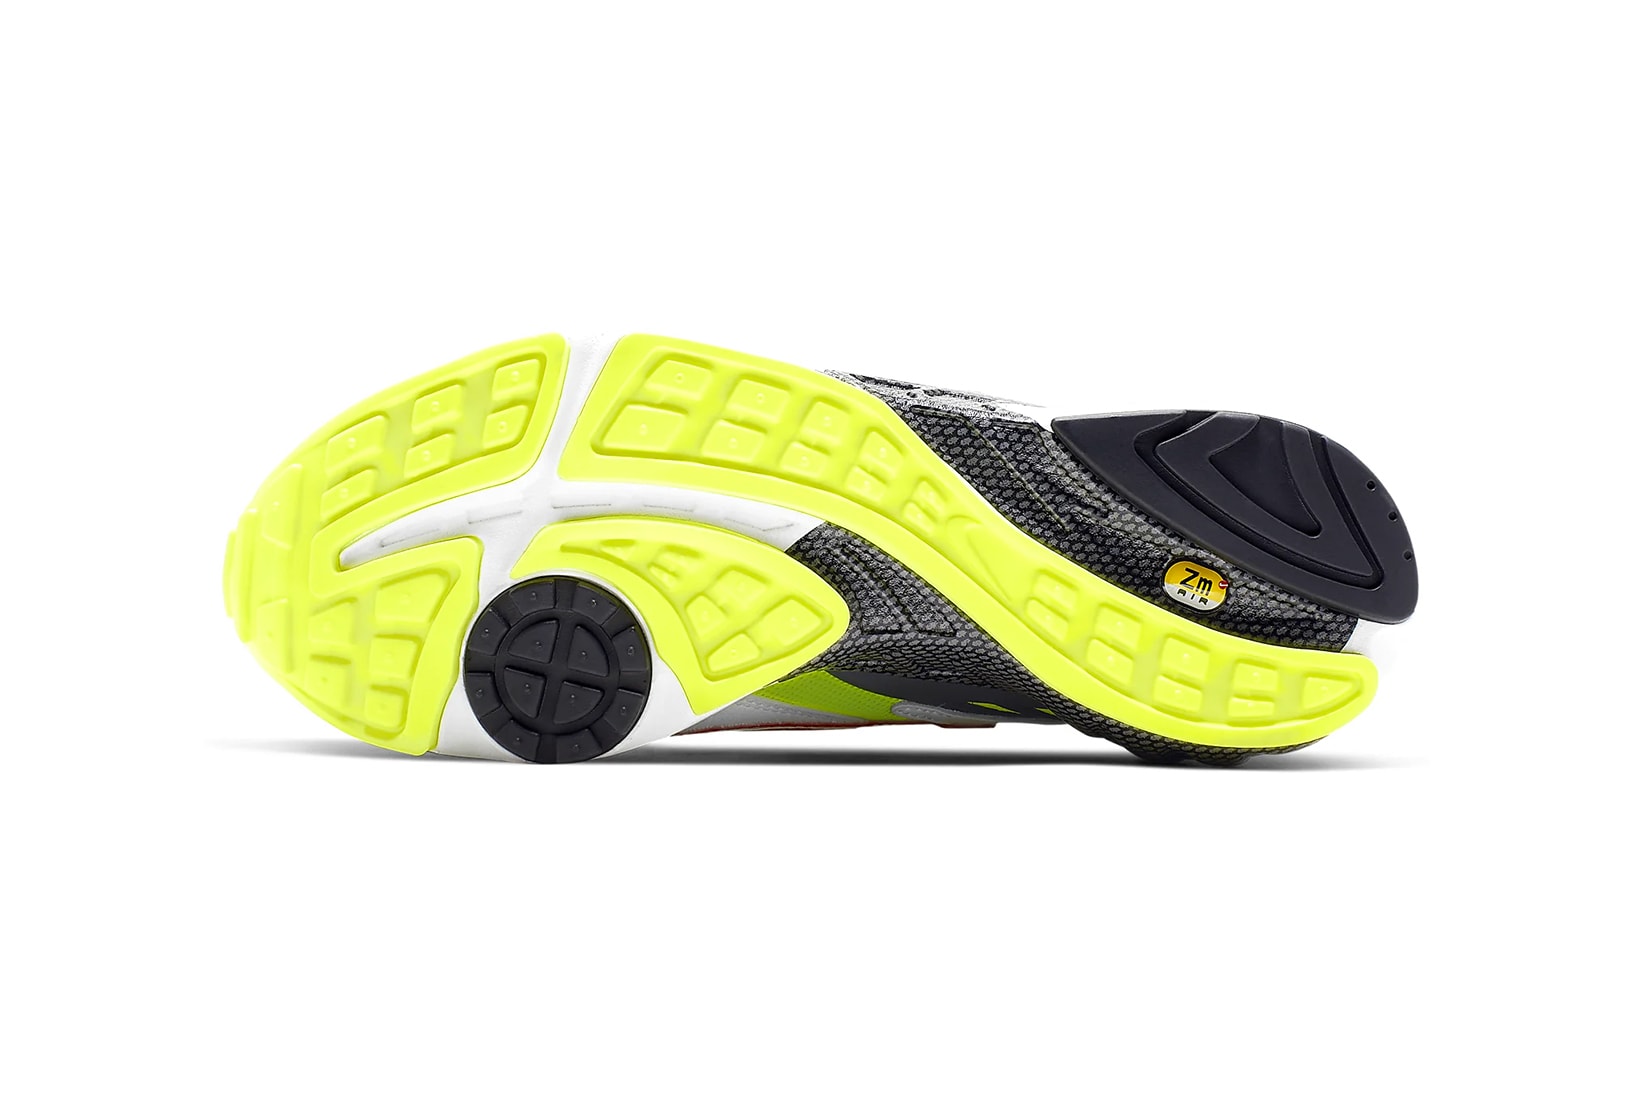 nike air ghost racer original color white neon yellow dark grey atom red sneakers sneakerhead shoes footwear